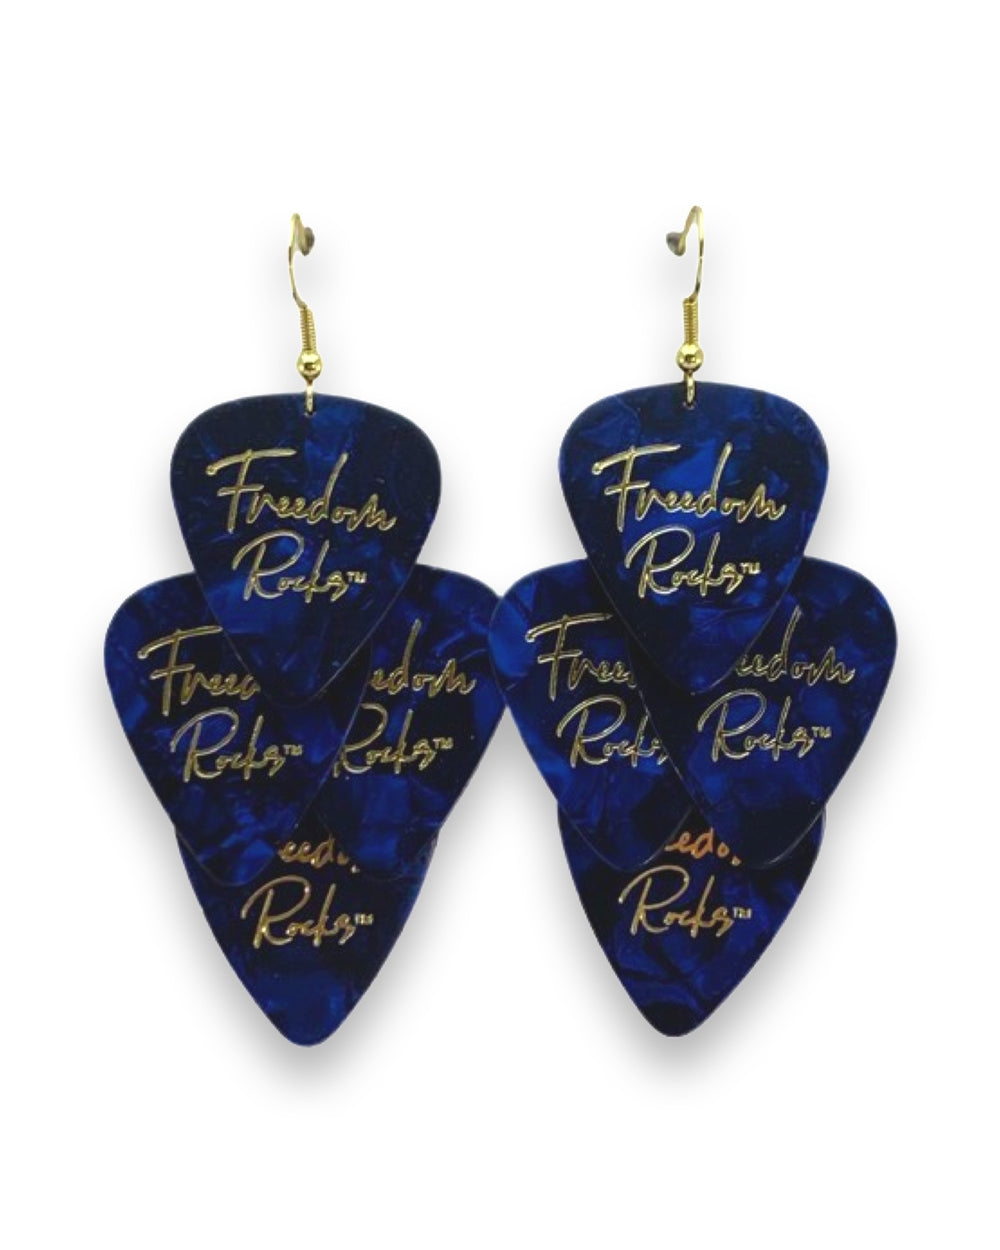 Freedom Rocks Blue Minor Guitar Pick Earrings